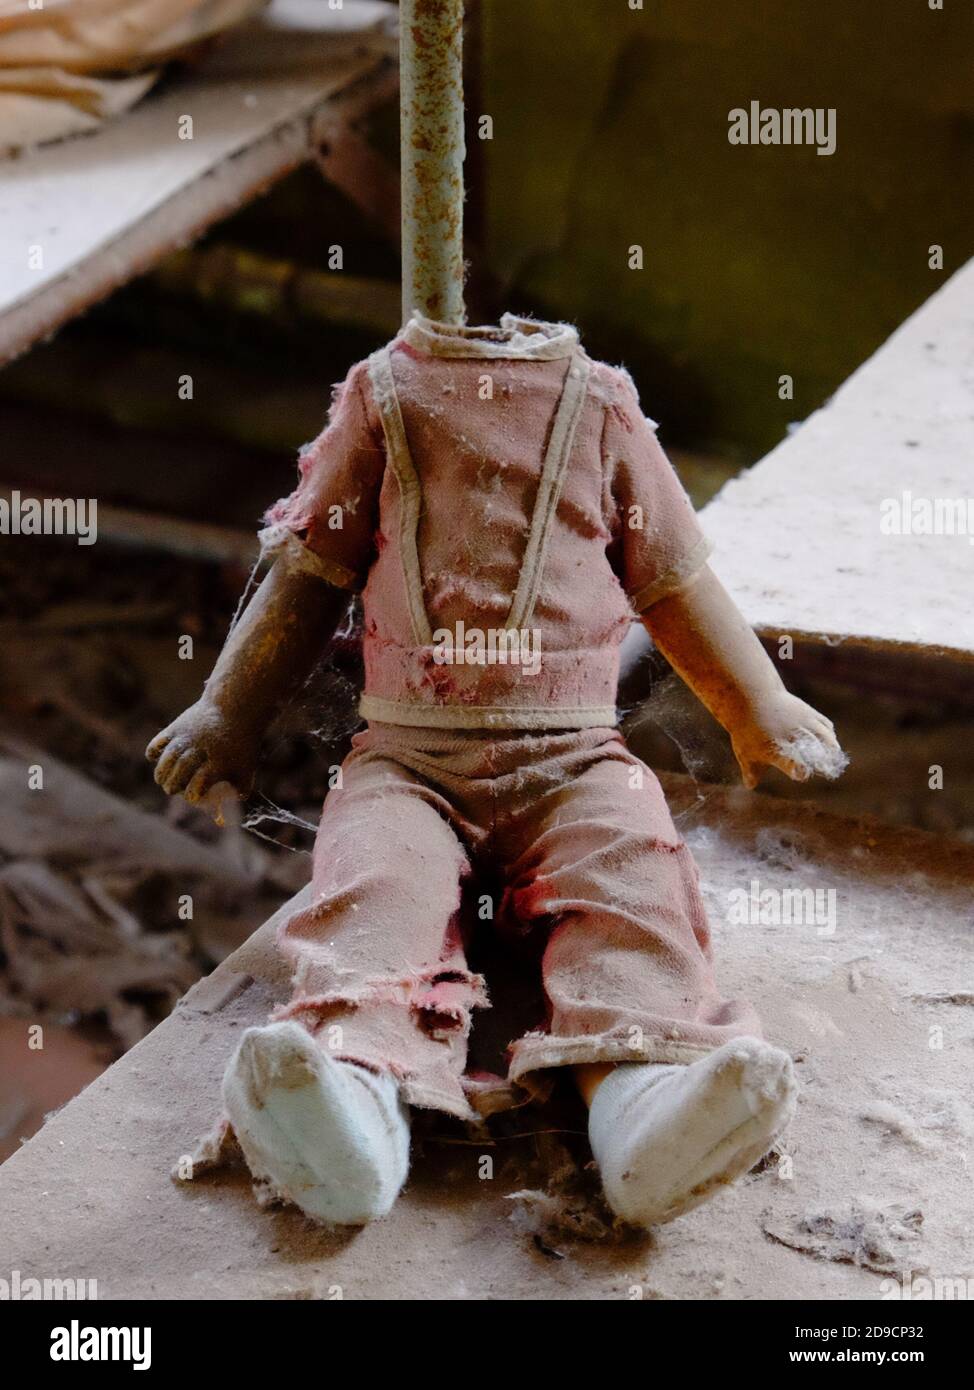 Kinderpuppe ohne Kopf. Ein schmutziges, zerbrochenes Kinderspielzeug aus einem strahlenverseuchten Kindergarten in Tschernobyl. Stockfoto